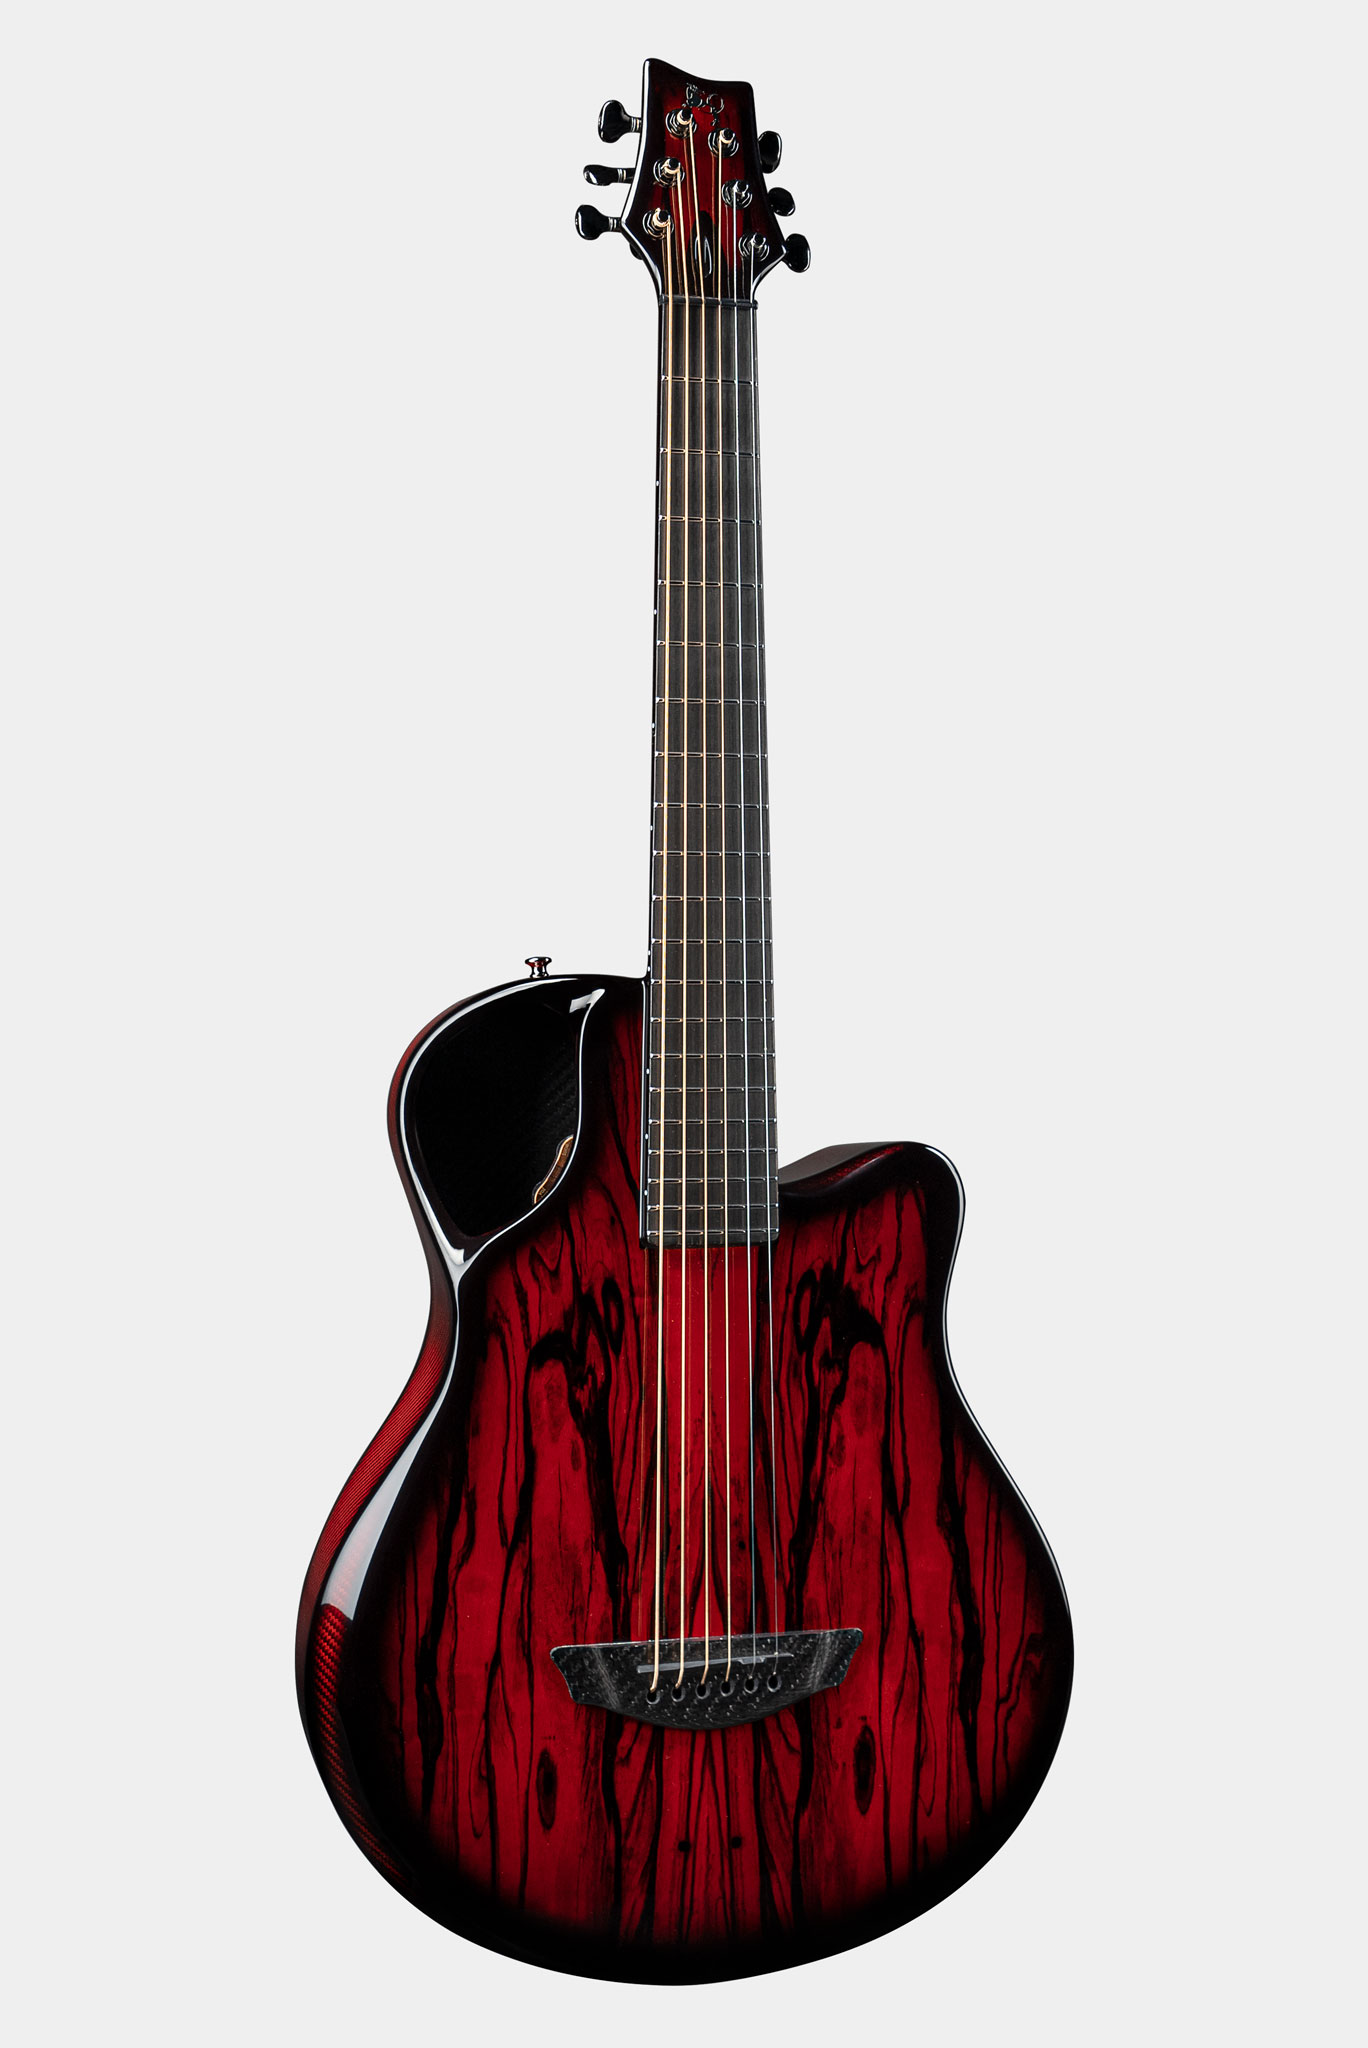 Emerald X7 Carbon Fiber Guitar in Vibrant Red Ebony